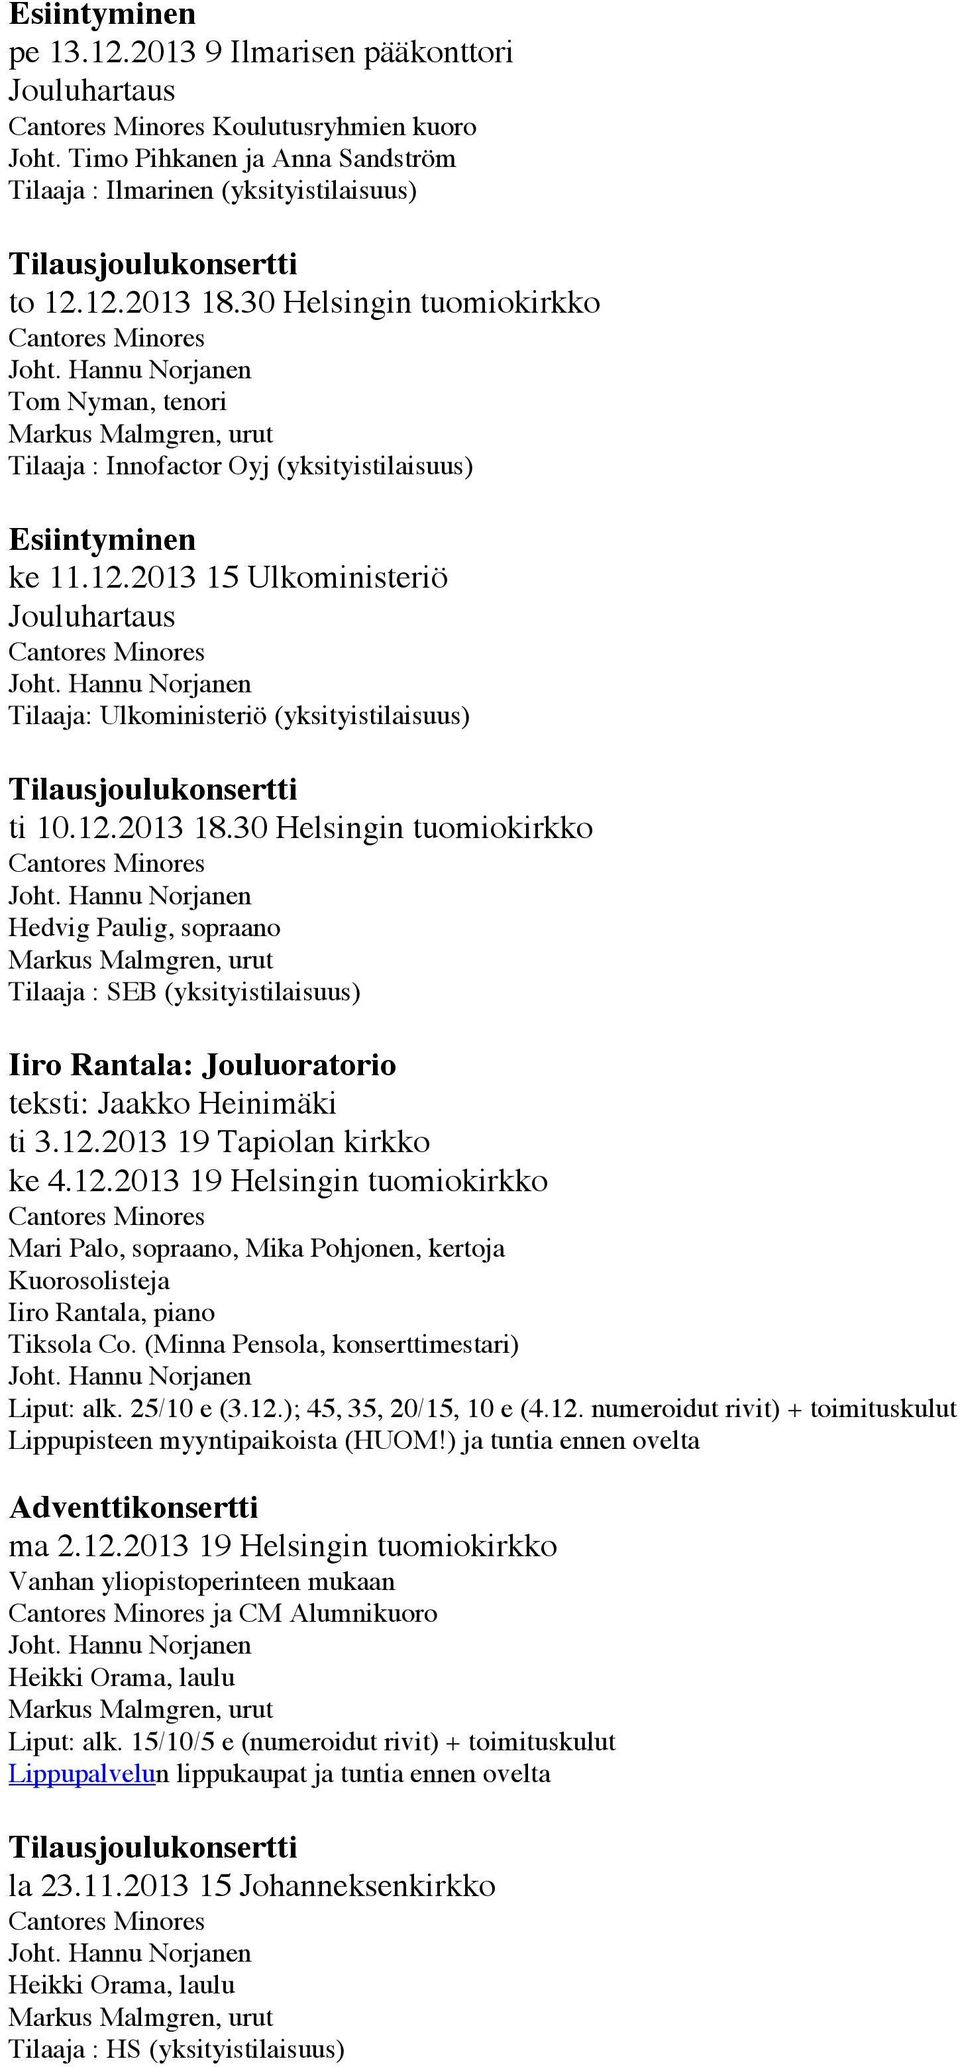 30 Helsingin tuomiokirkko Hedvig Paulig, sopraano Tilaaja : SEB (yksityistilaisuus) Iiro Rantala: Jouluoratorio teksti: Jaakko Heinimäki ti 3.12.